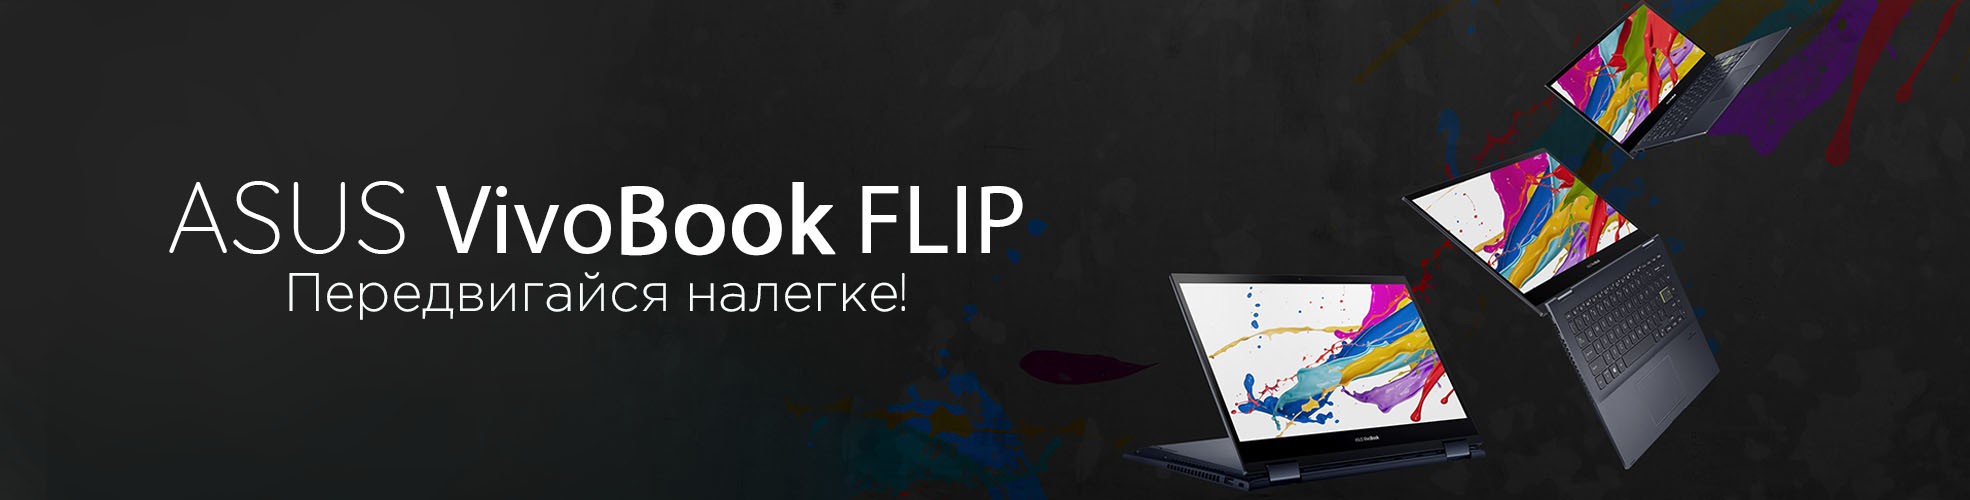 asus vivobook flip 14 r5 1970x500 1 Asus VivoBook FLIP noutbuklari Asus VivoBook